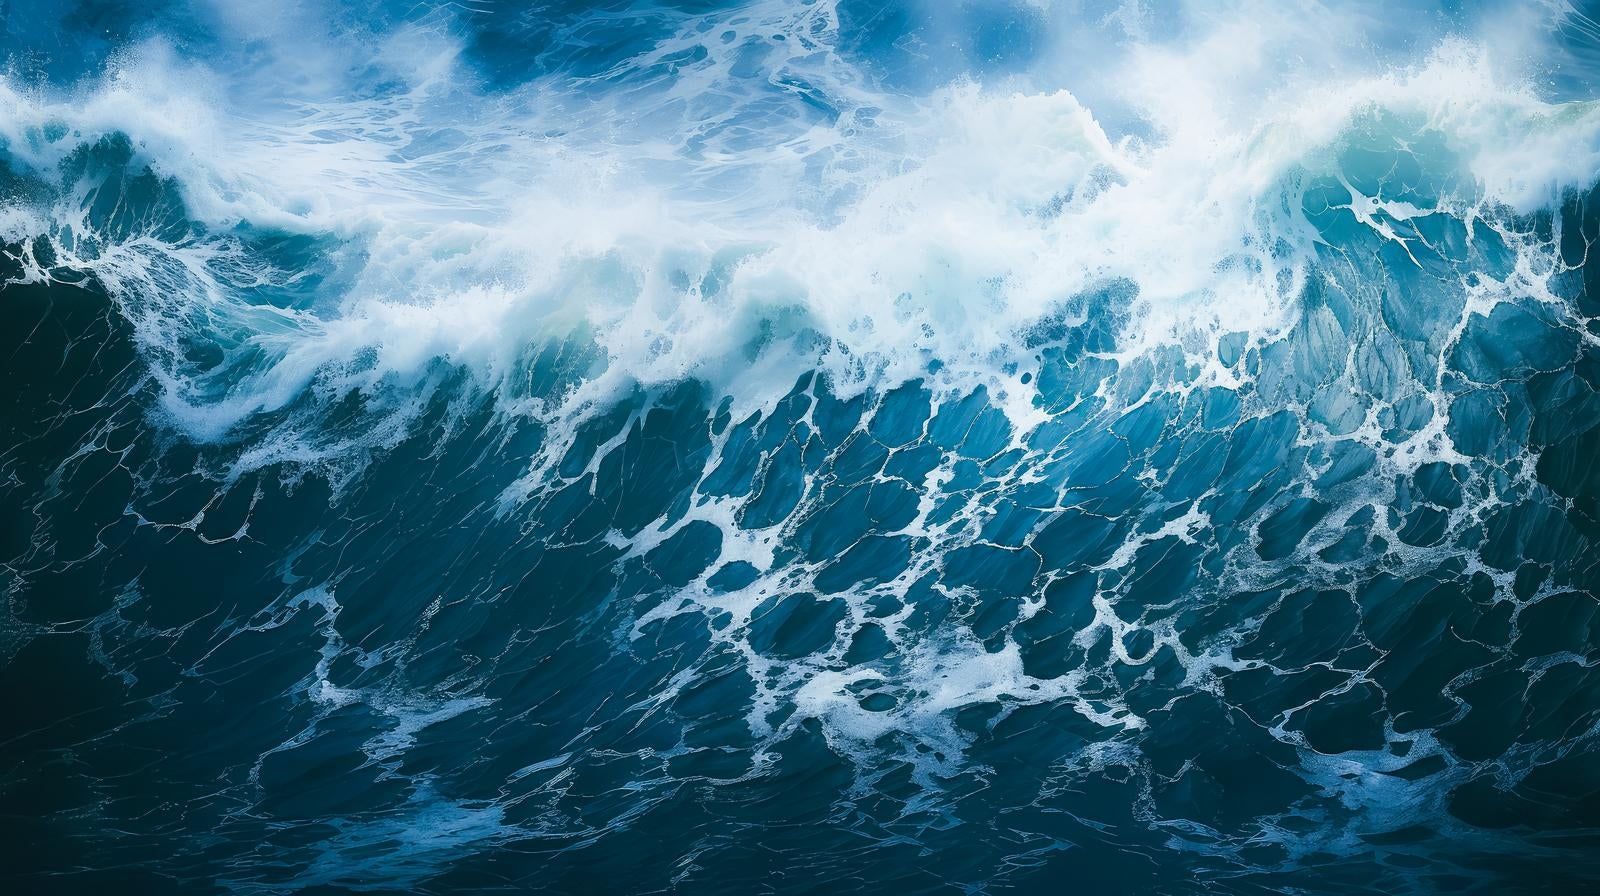 「暴風の歌 荒れ狂う海のドラマティックな瞬間」の写真